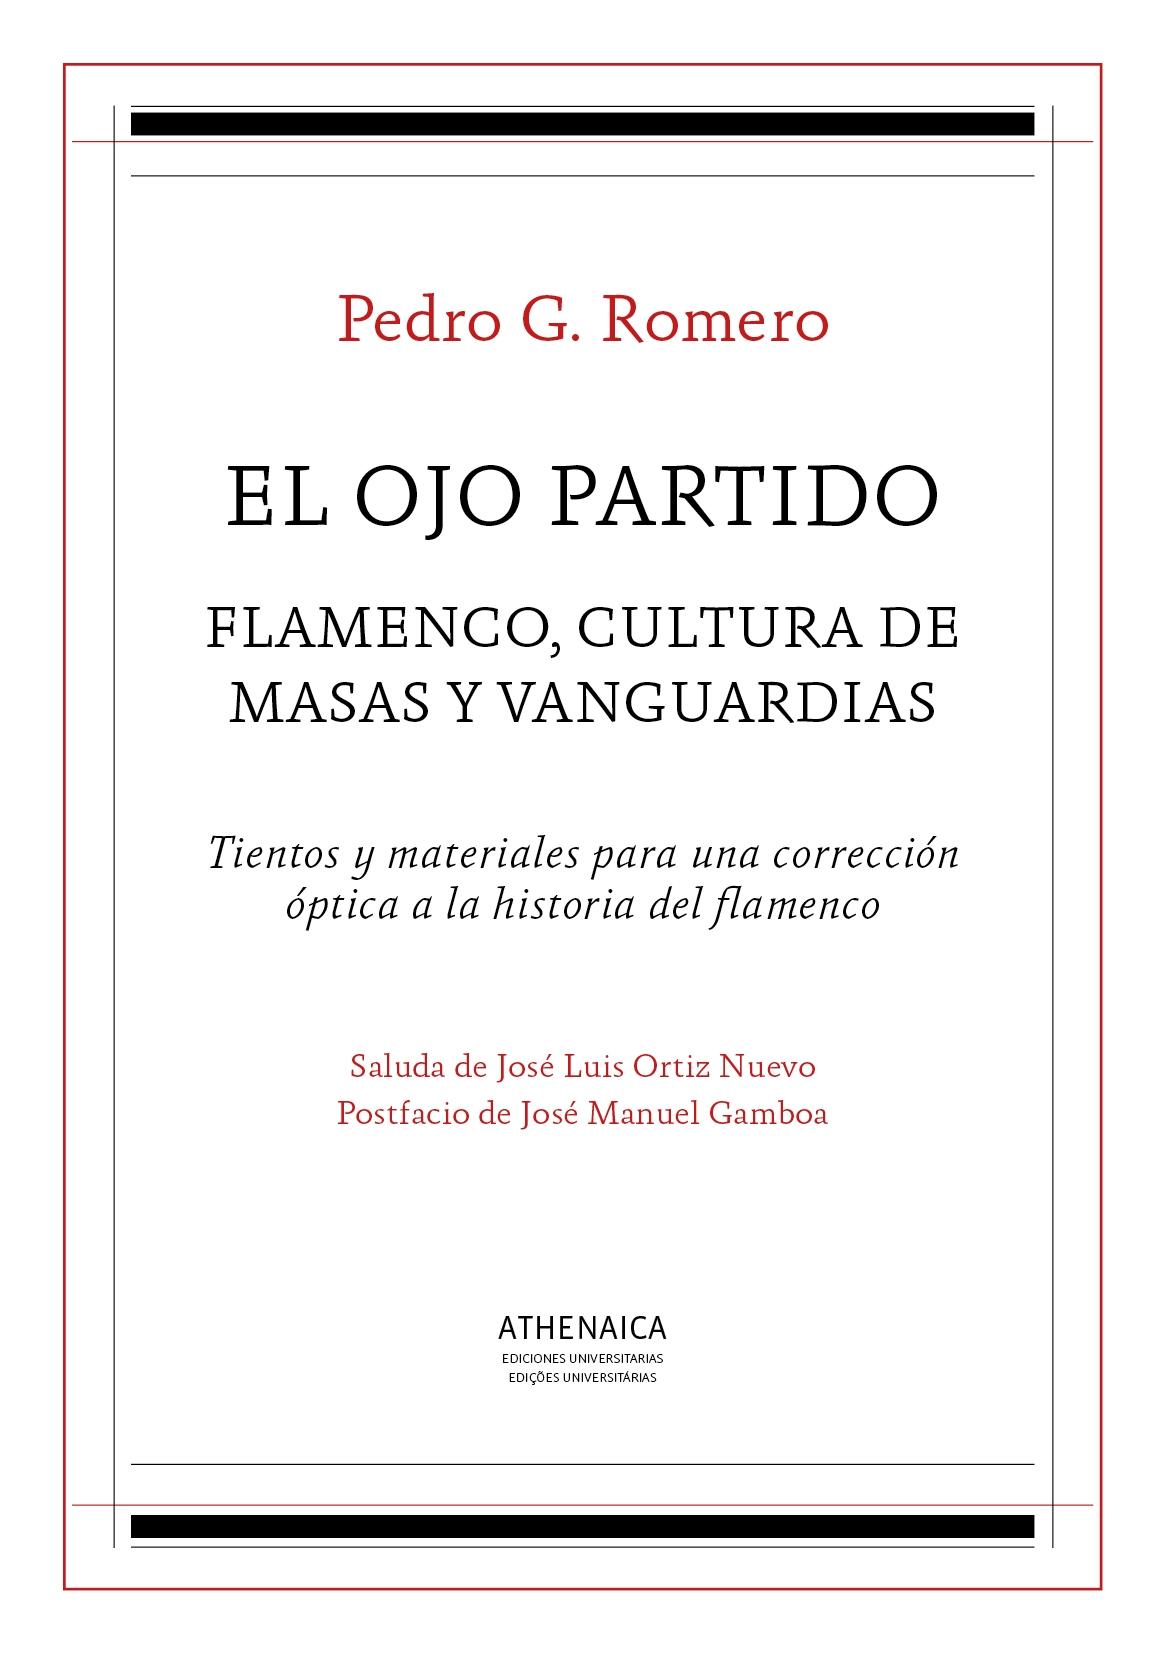 El Ojo Partido "Flamenco, Cultura de Masas y Vanguardias". 